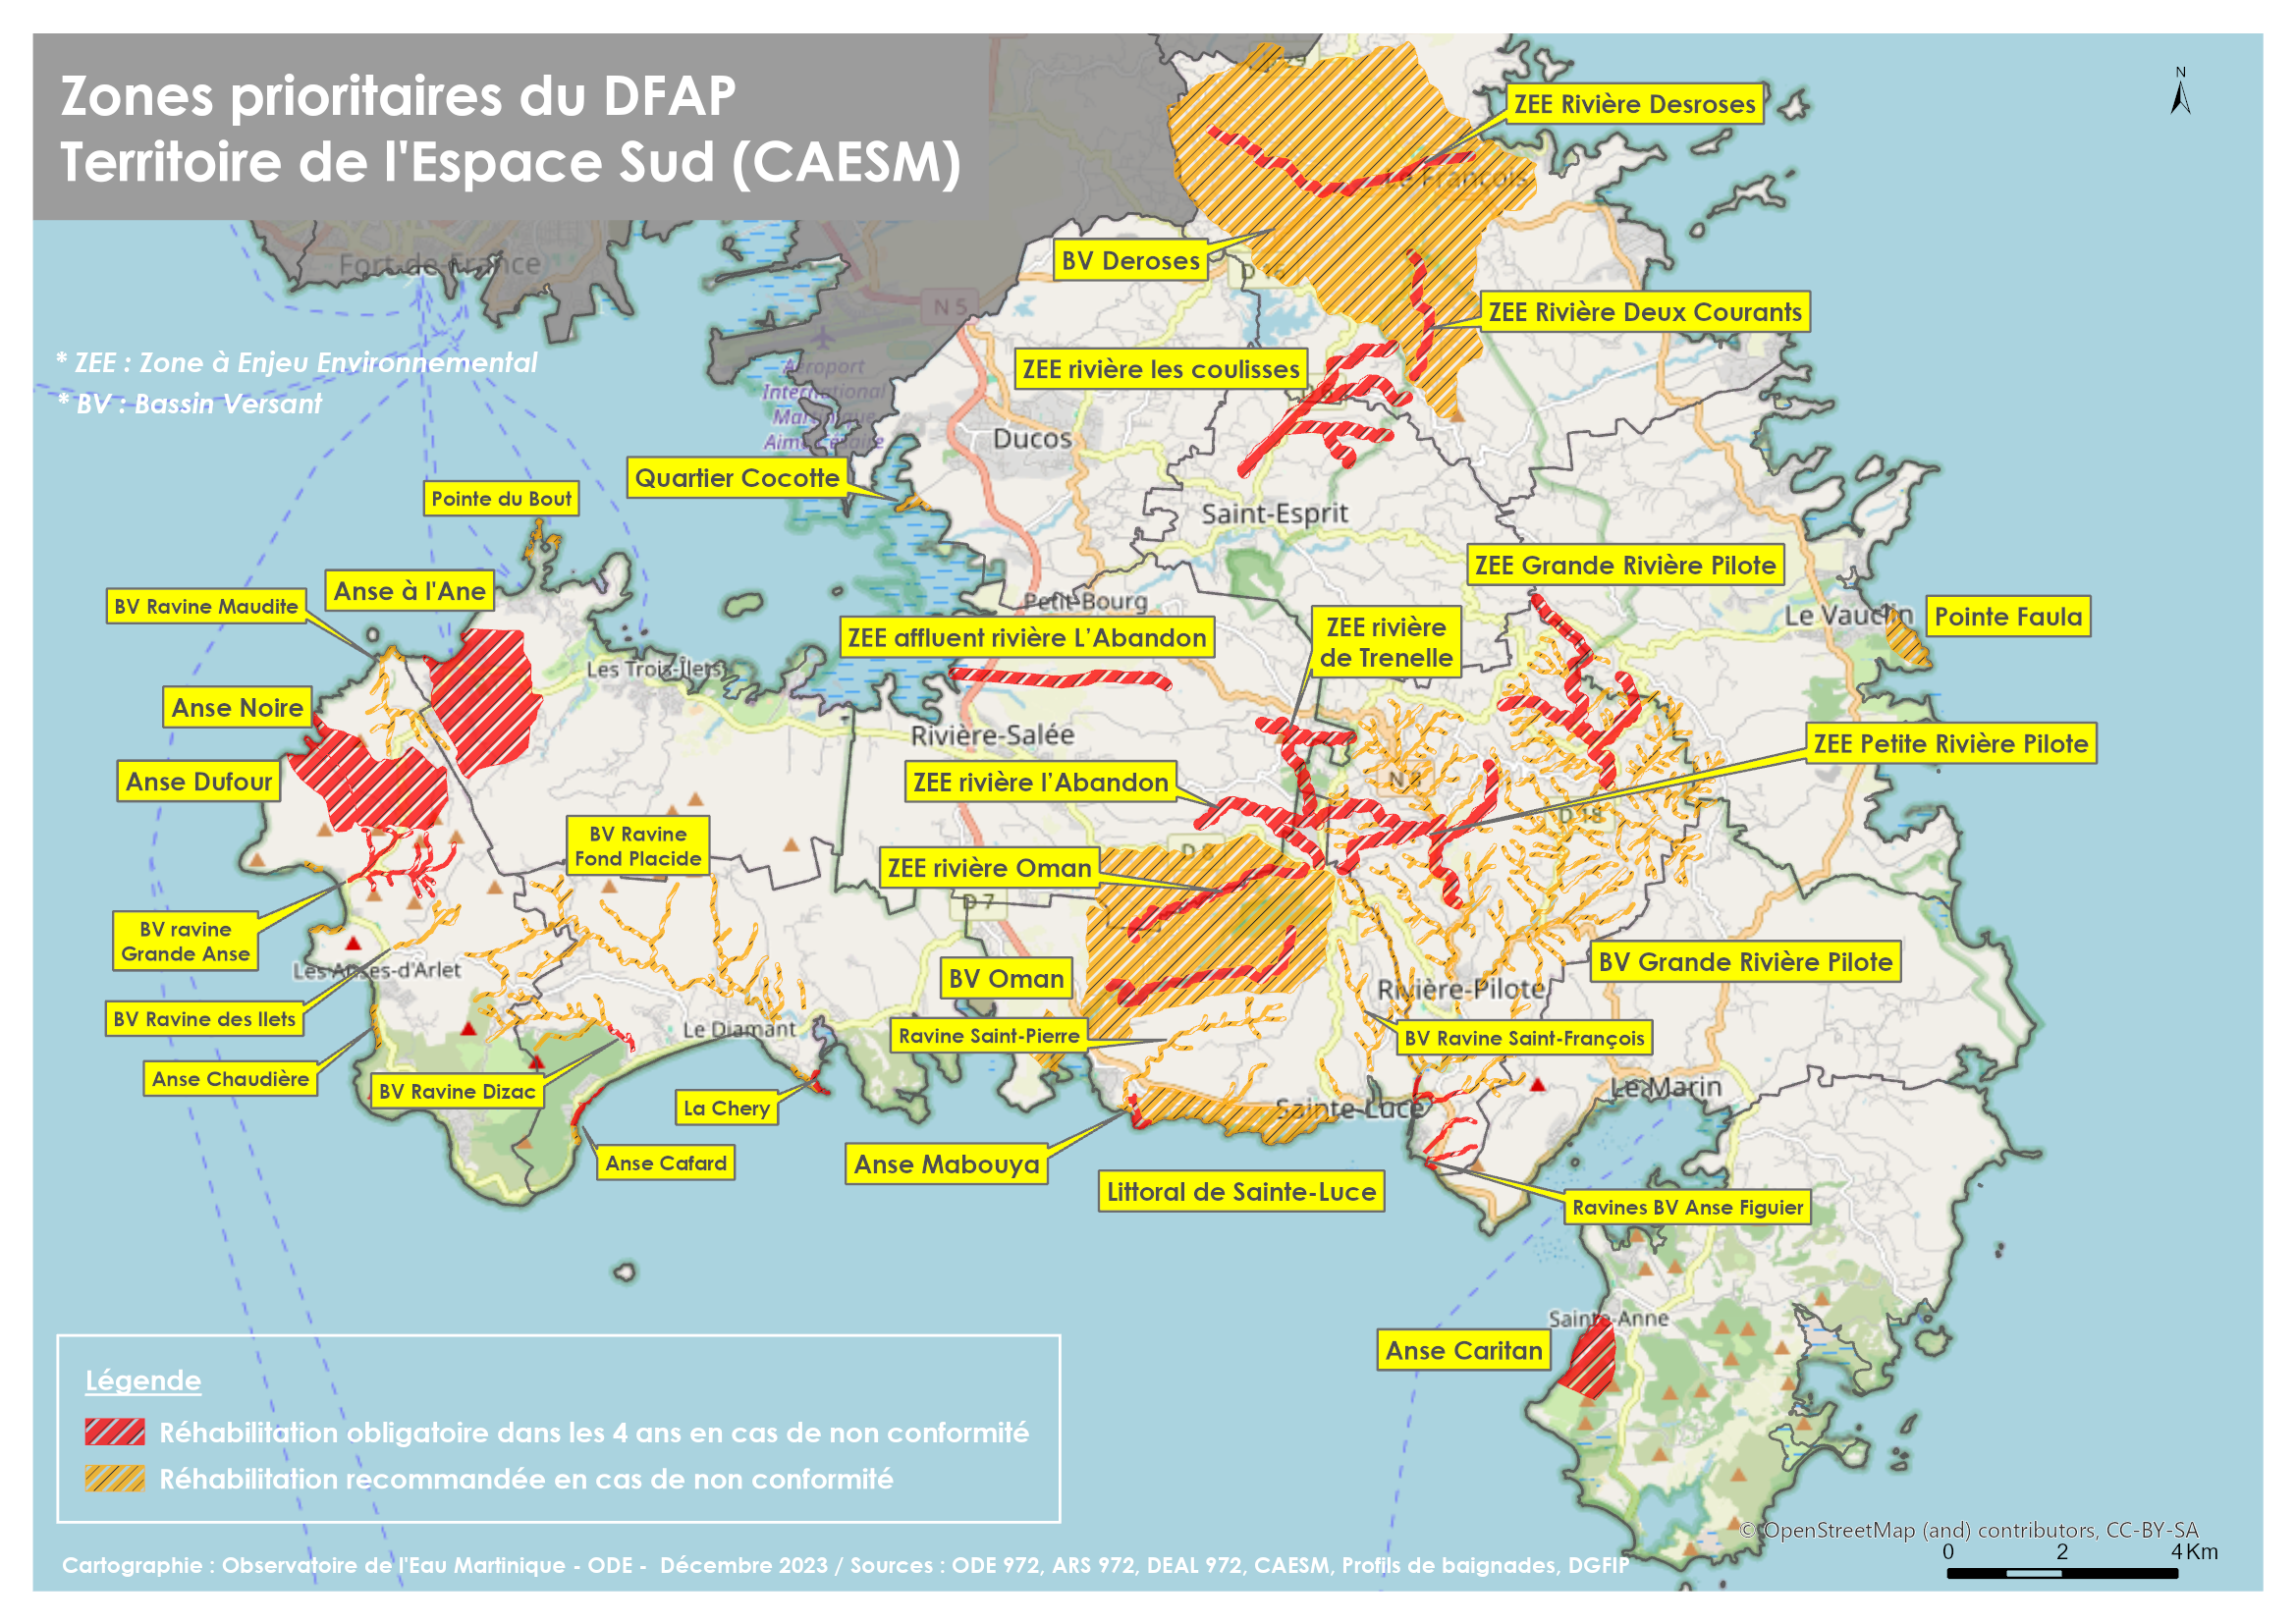 Zones prioritaires du DFAP (Dispositif de Financement de l'Assainissement pour les Particuliers) sur le territoire de la CAESM